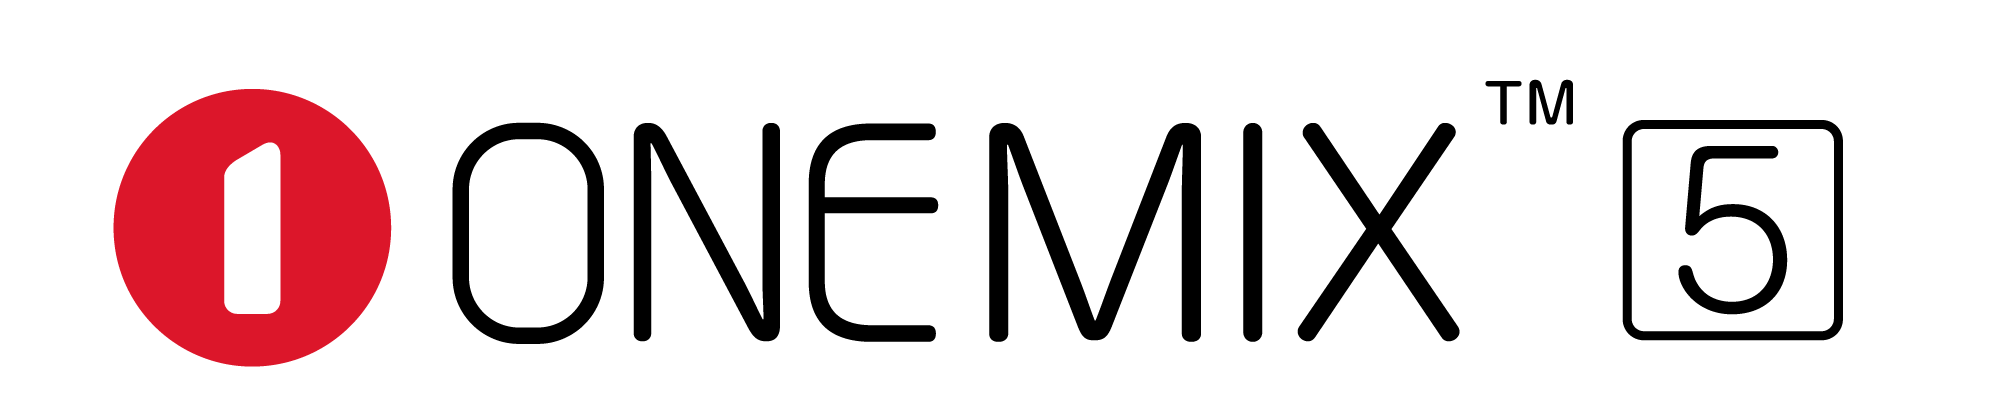 OneMix5 logo